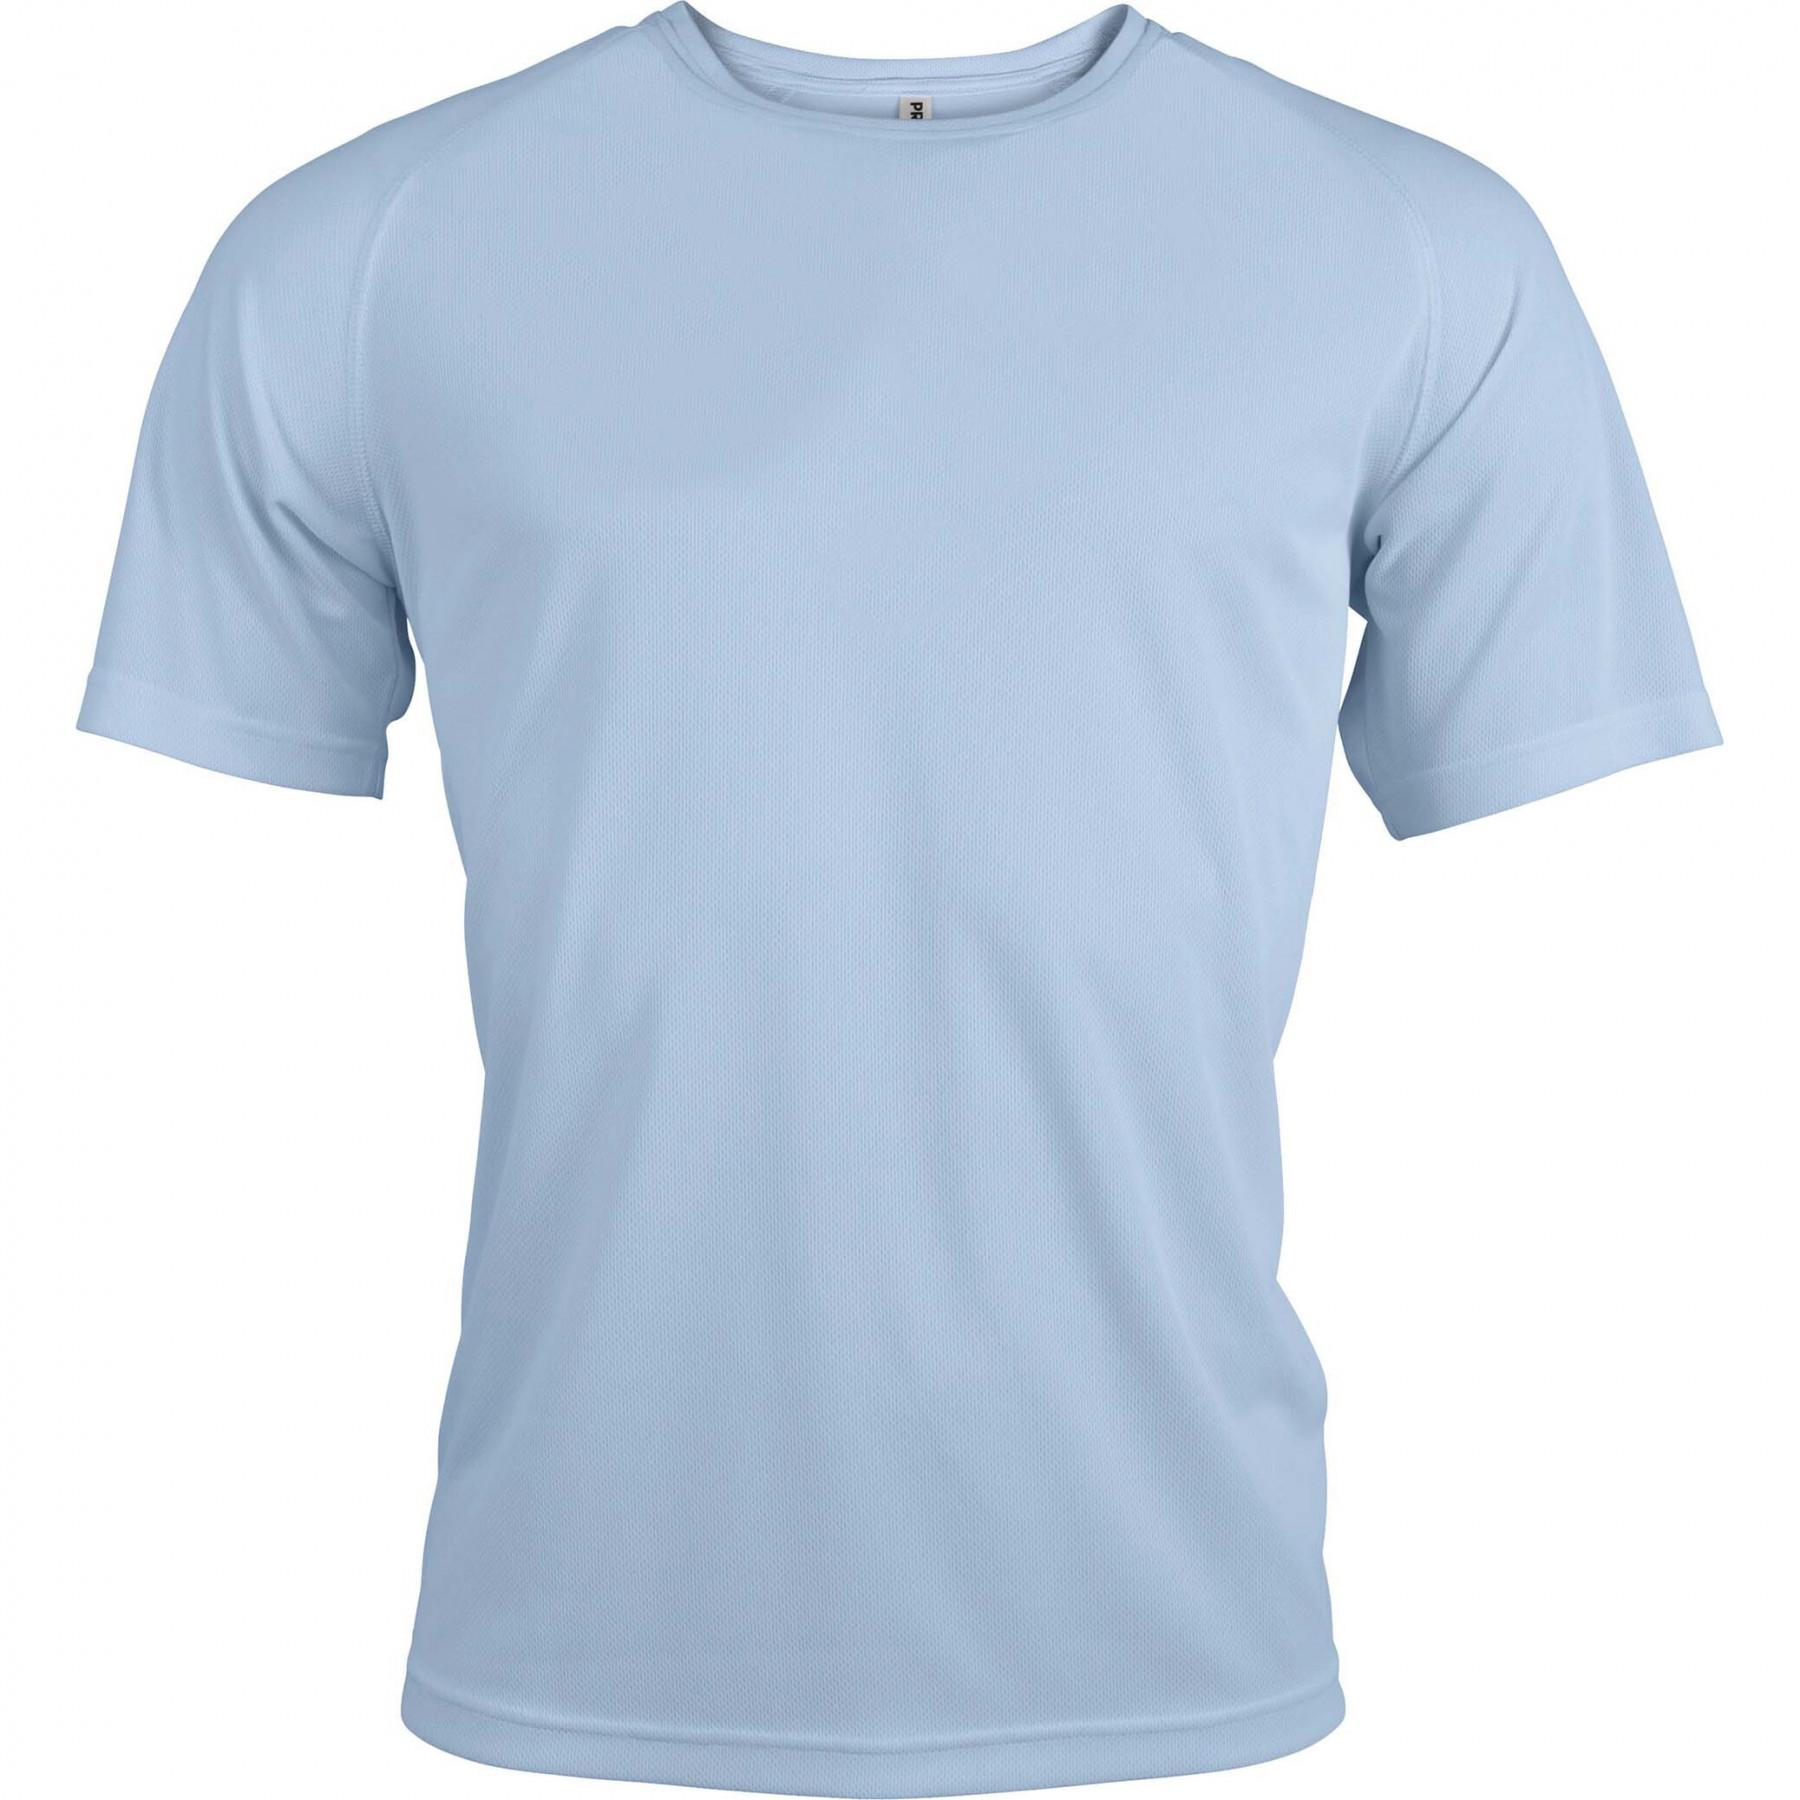 Short sleeve T-shirt Proact Sport